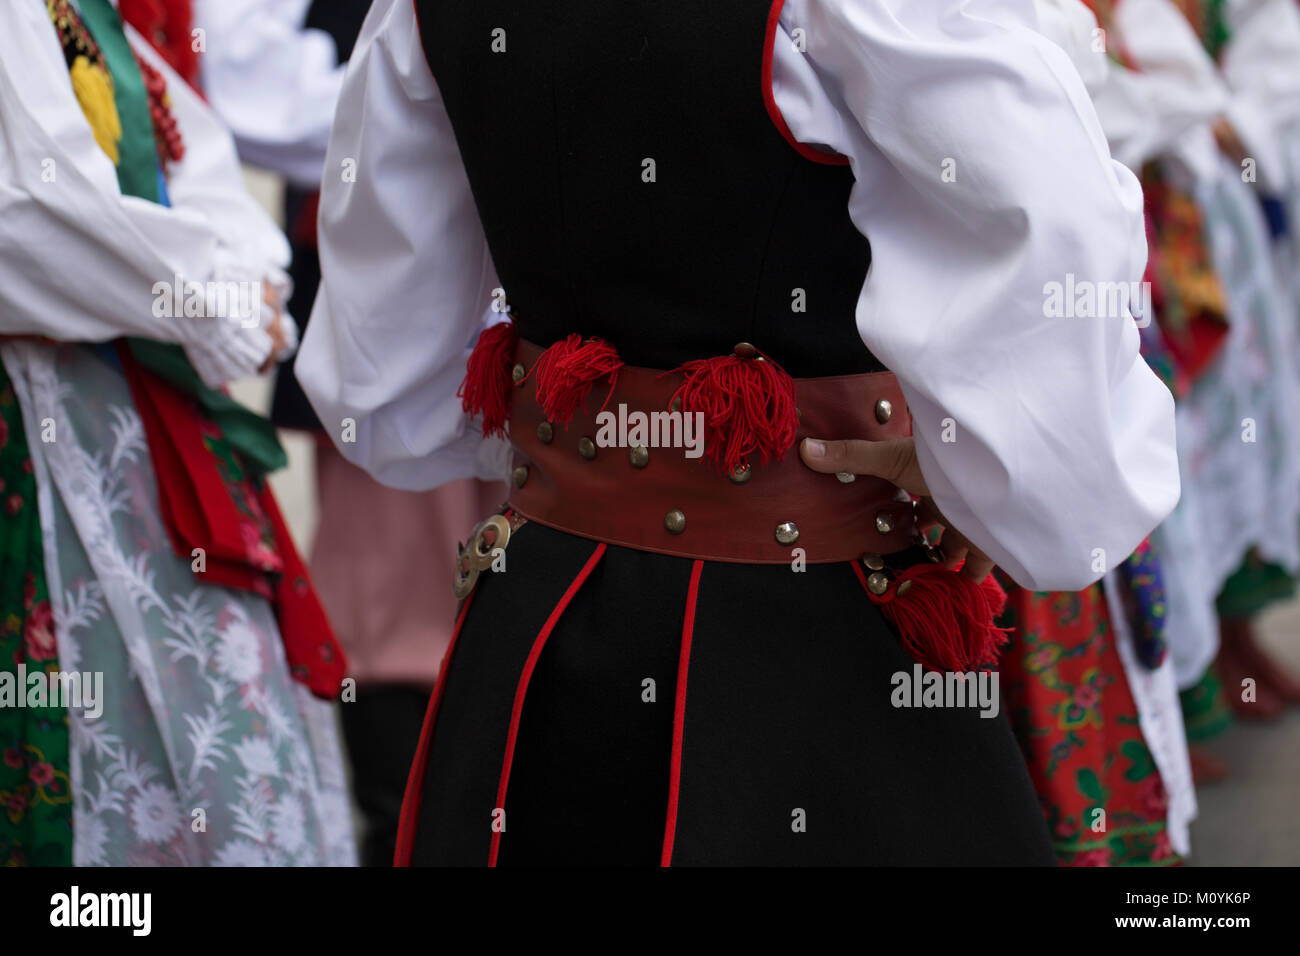 Groupe de danse folklorique polonais avec costume traditionnel Banque D'Images